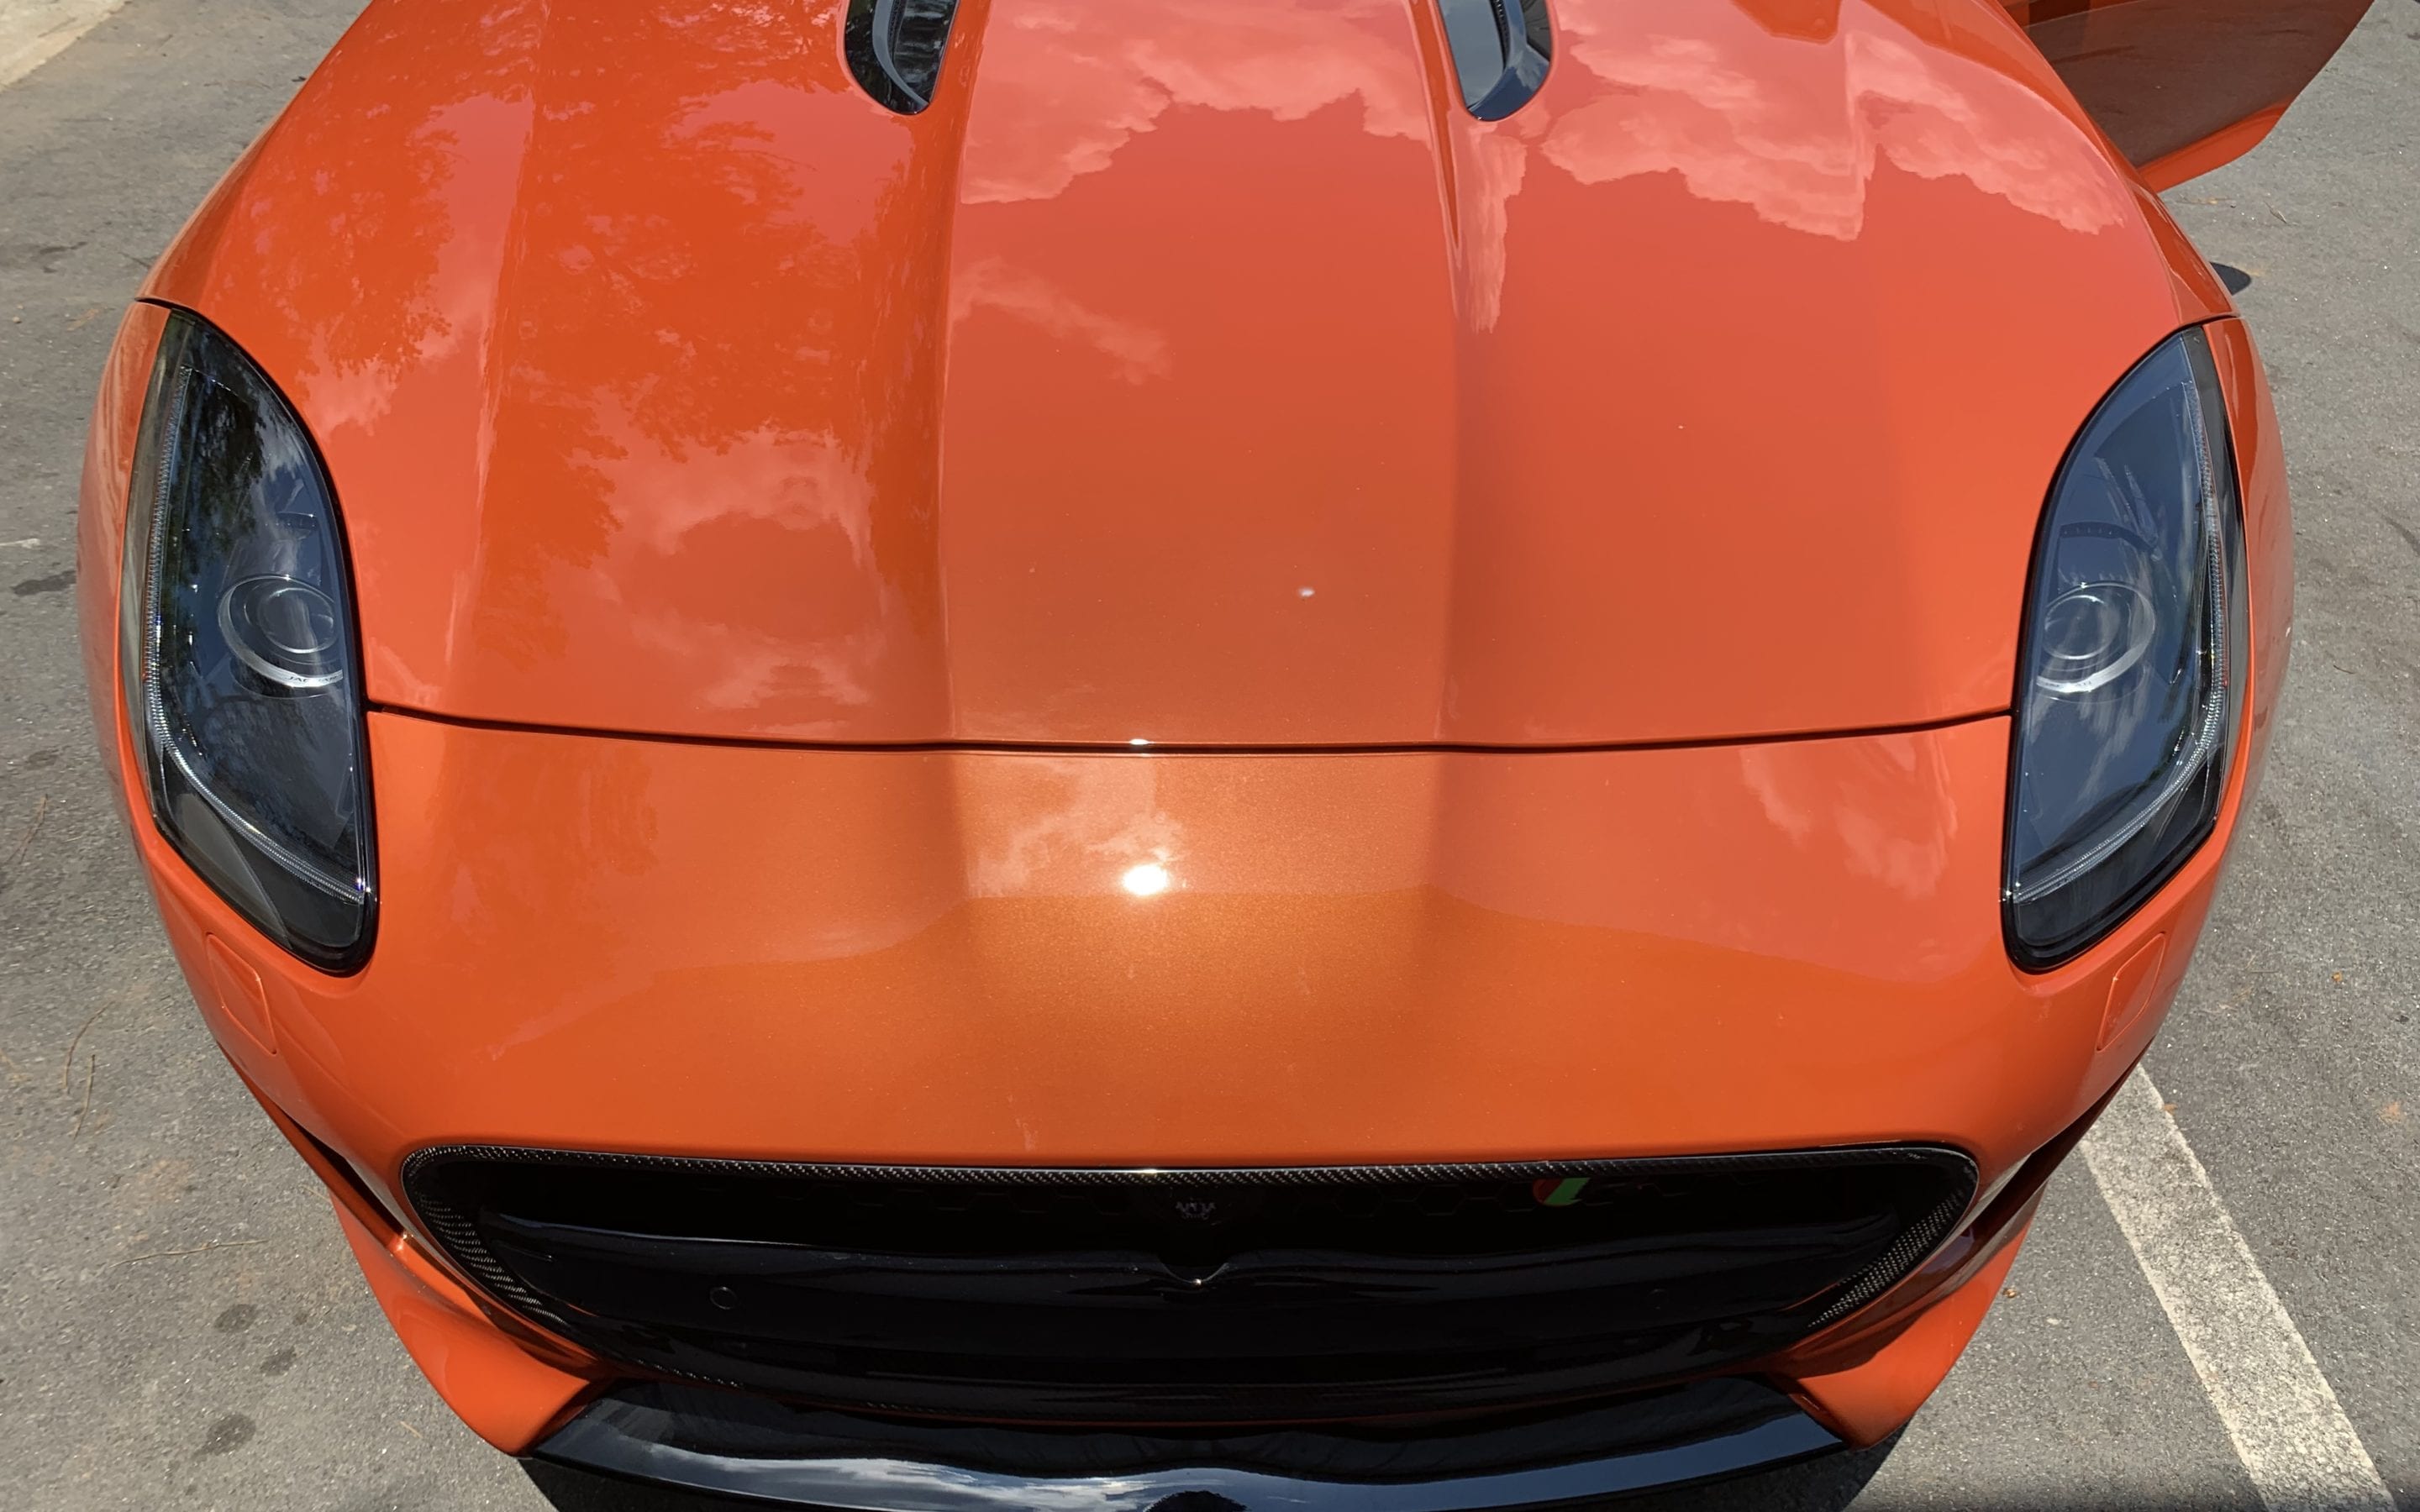 Full Detail of a 2019 Jaguar F Type